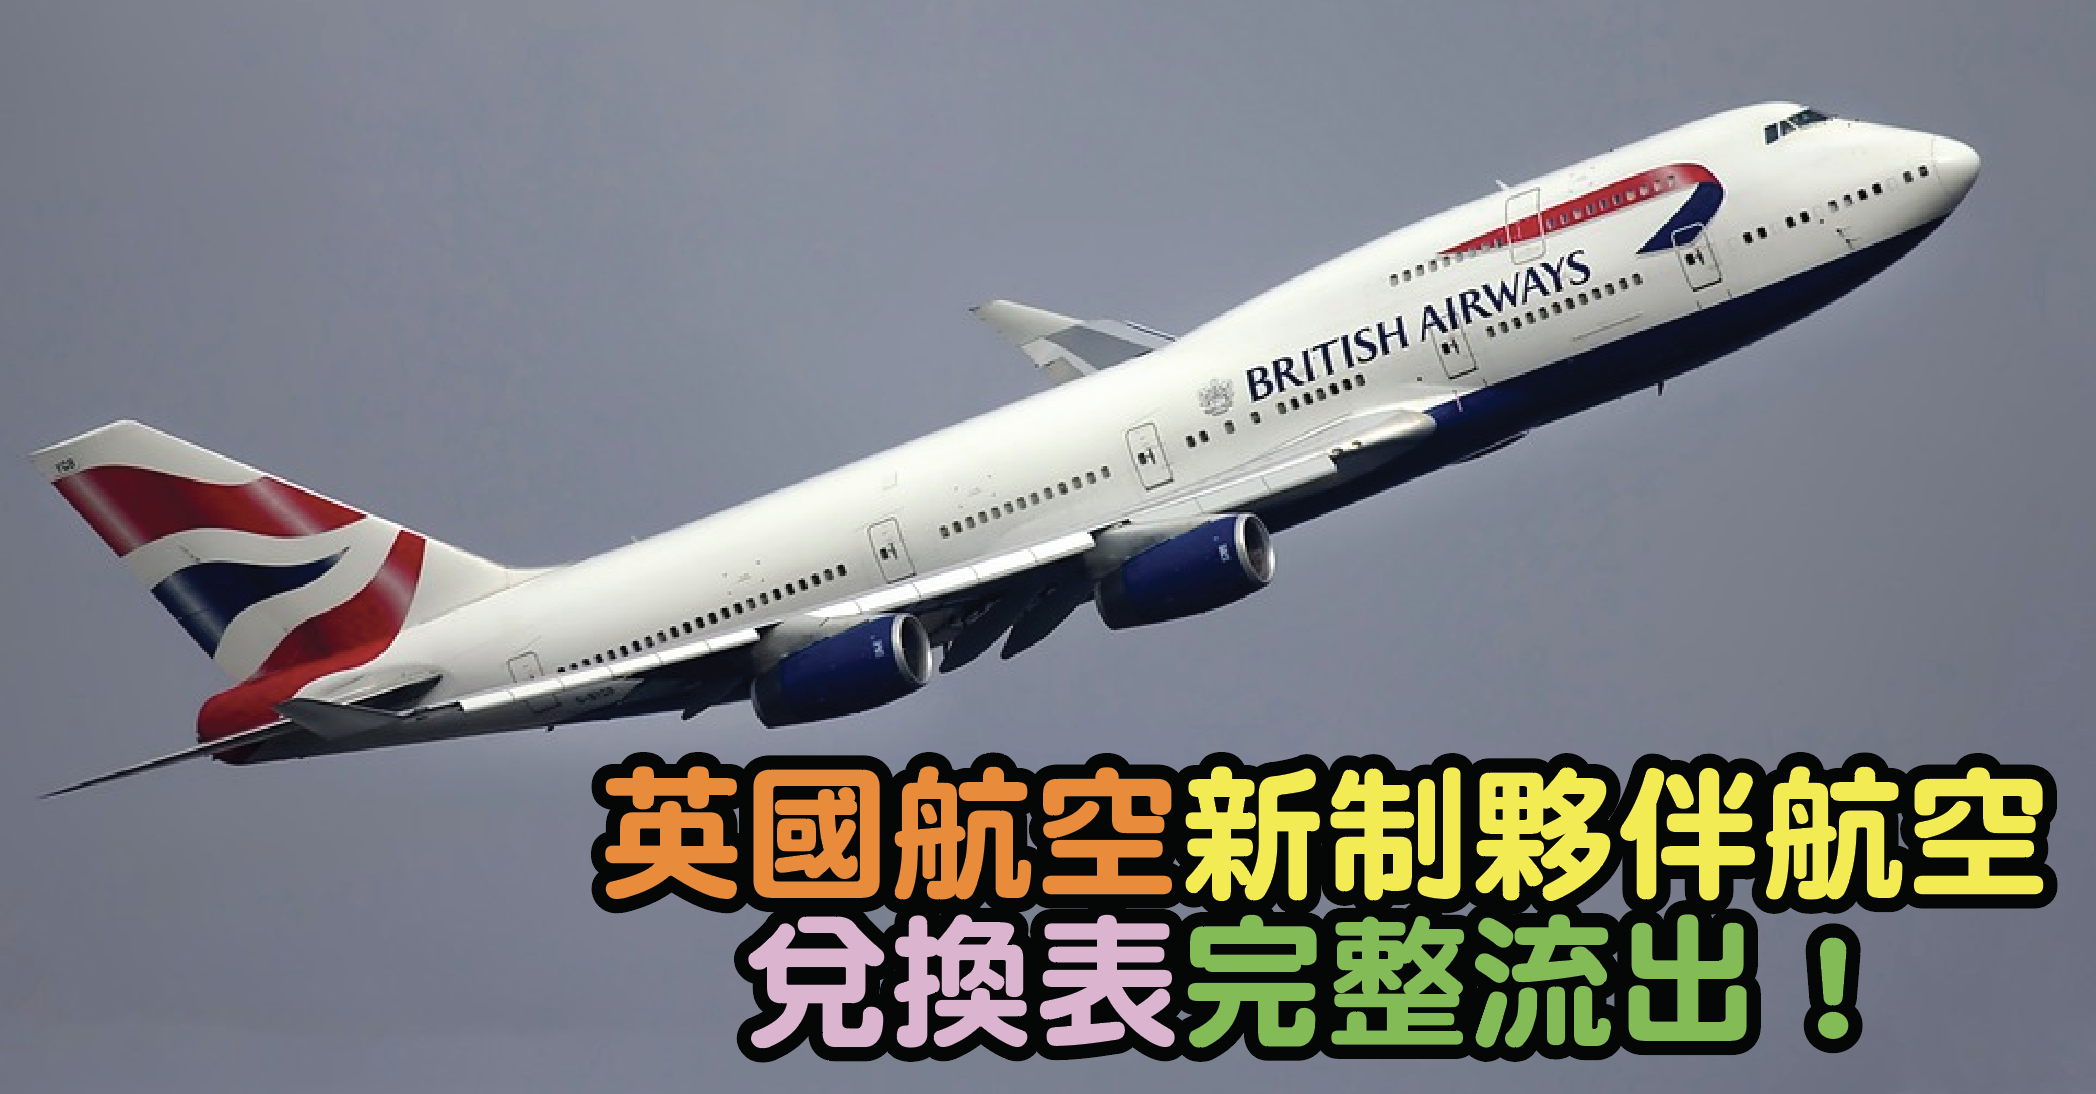 英國航空 British Airways 新制夥伴航空兌換表